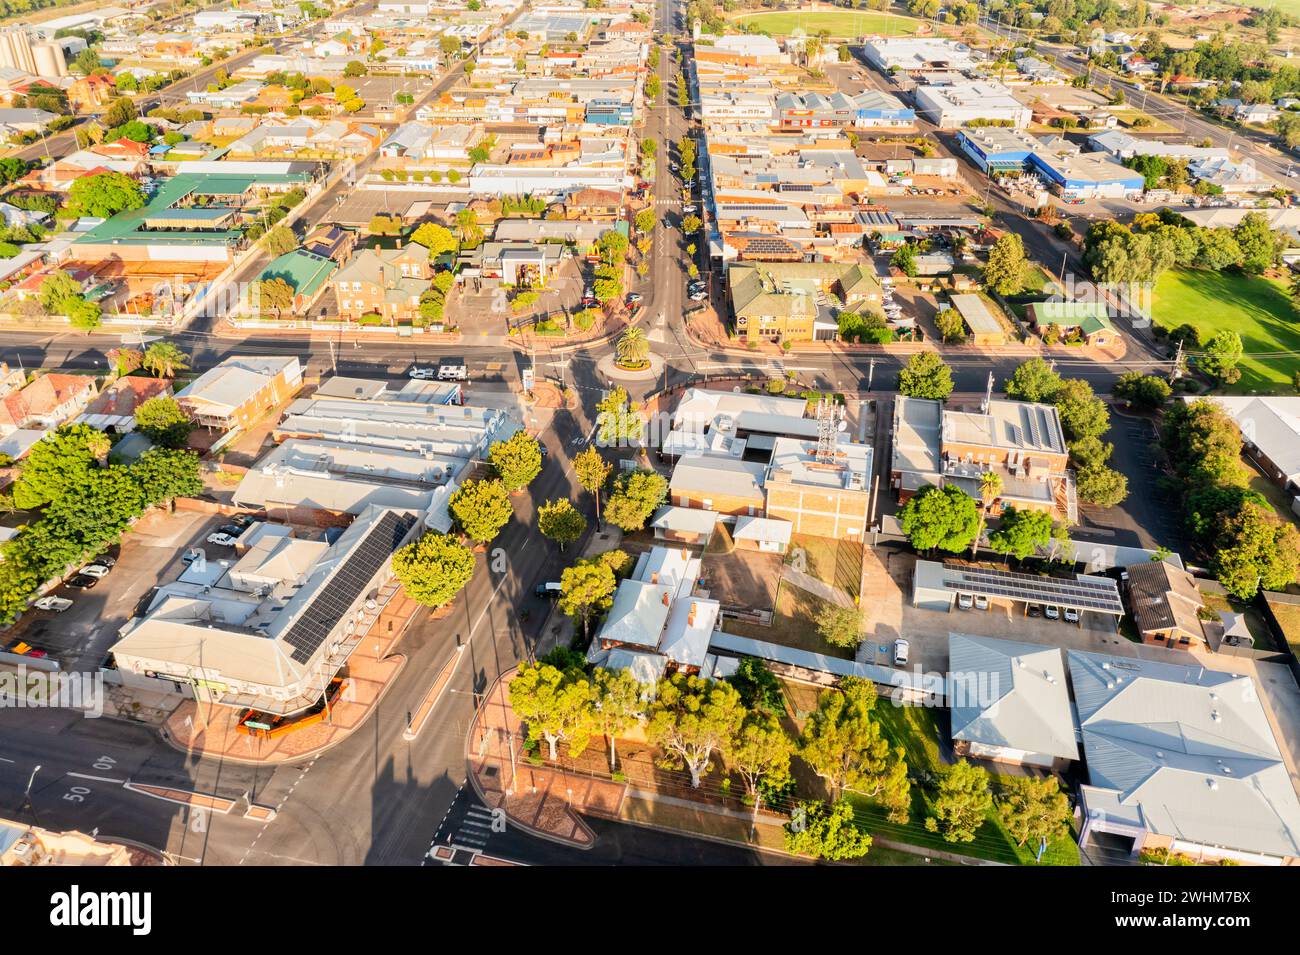 Blick von oben nach unten auf die Innenstadt von Gunnedah - ländliche regionale australische Outback-Stadt. Stockfoto